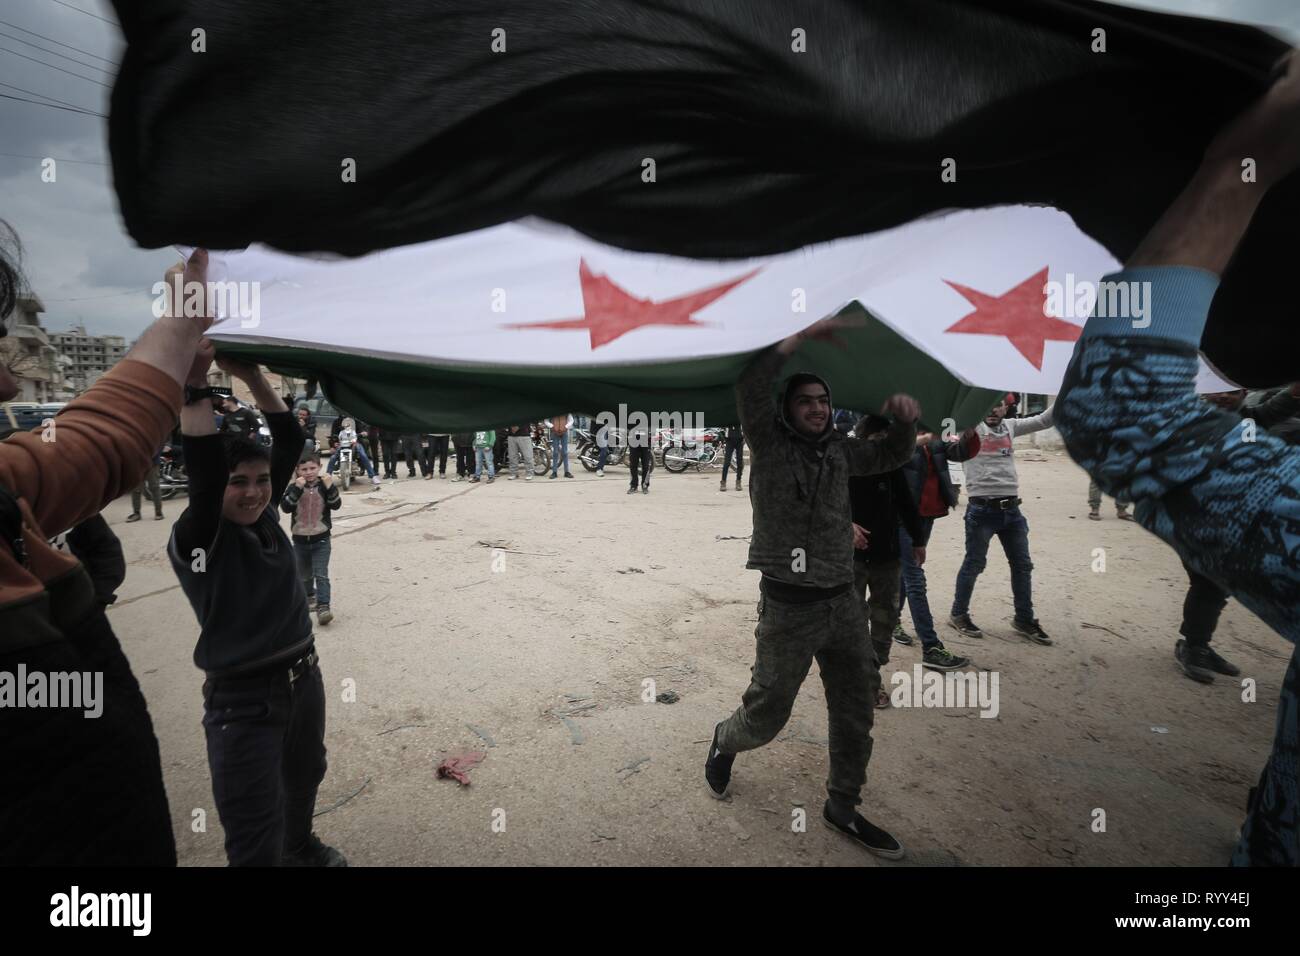 Siri sono visti trattenere un flag di opposizione durante la celebrazione. Siri nella città di Bensh, che si trova a est di Idlib e controllati dall'opposizione, celebrato l'ottavo anniversario della rivolta contro il regime del Presidente Bashar al-Assad. Foto Stock